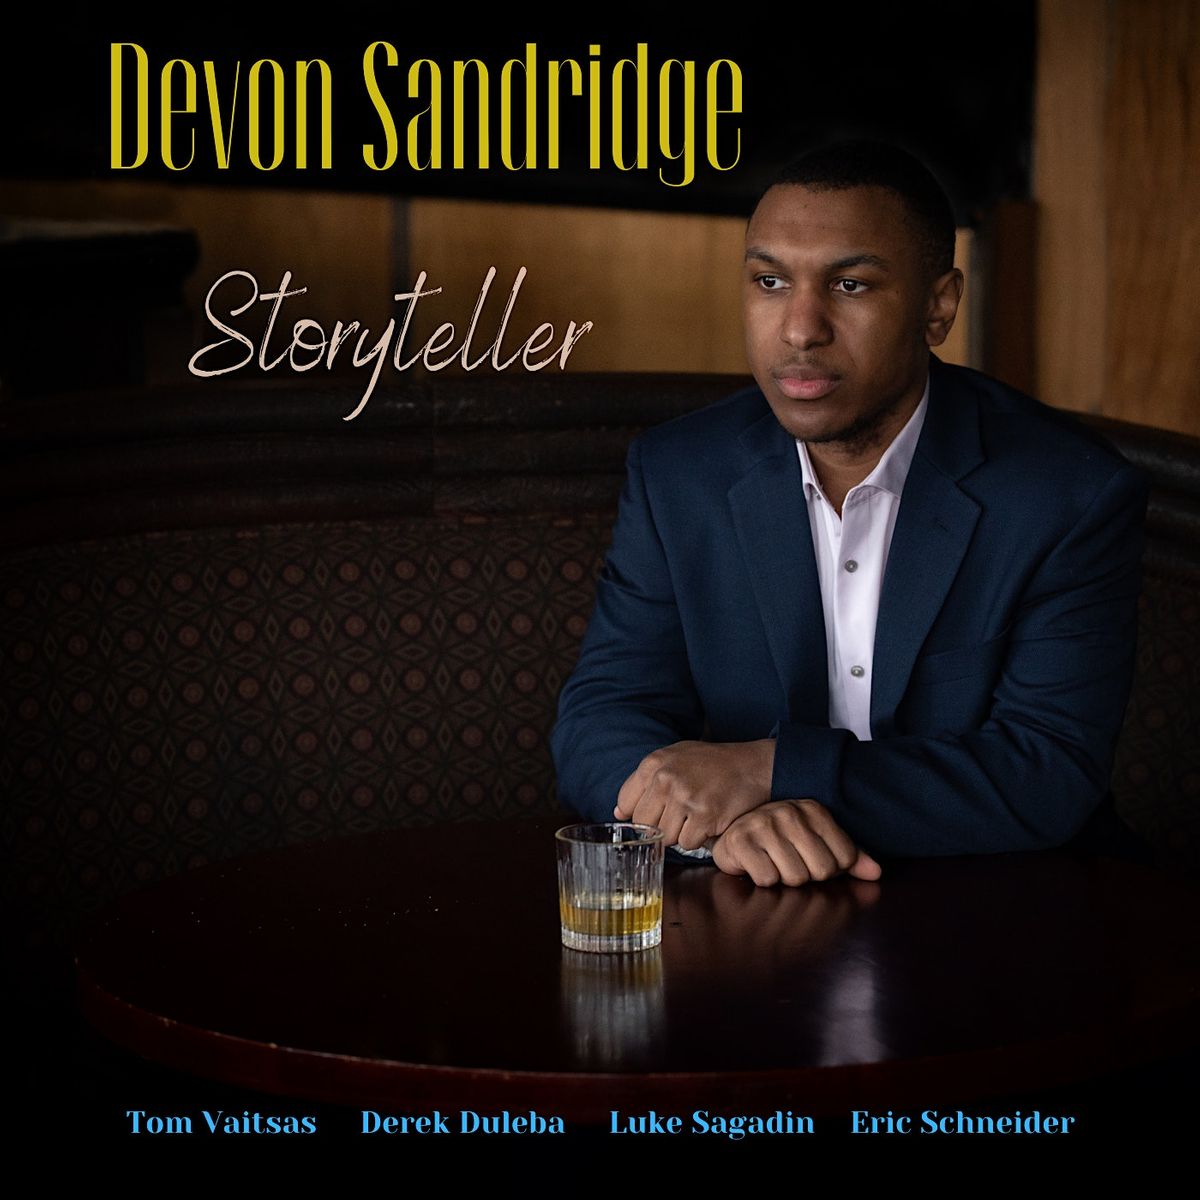 Devon Sandridge - "Storyteller" Release